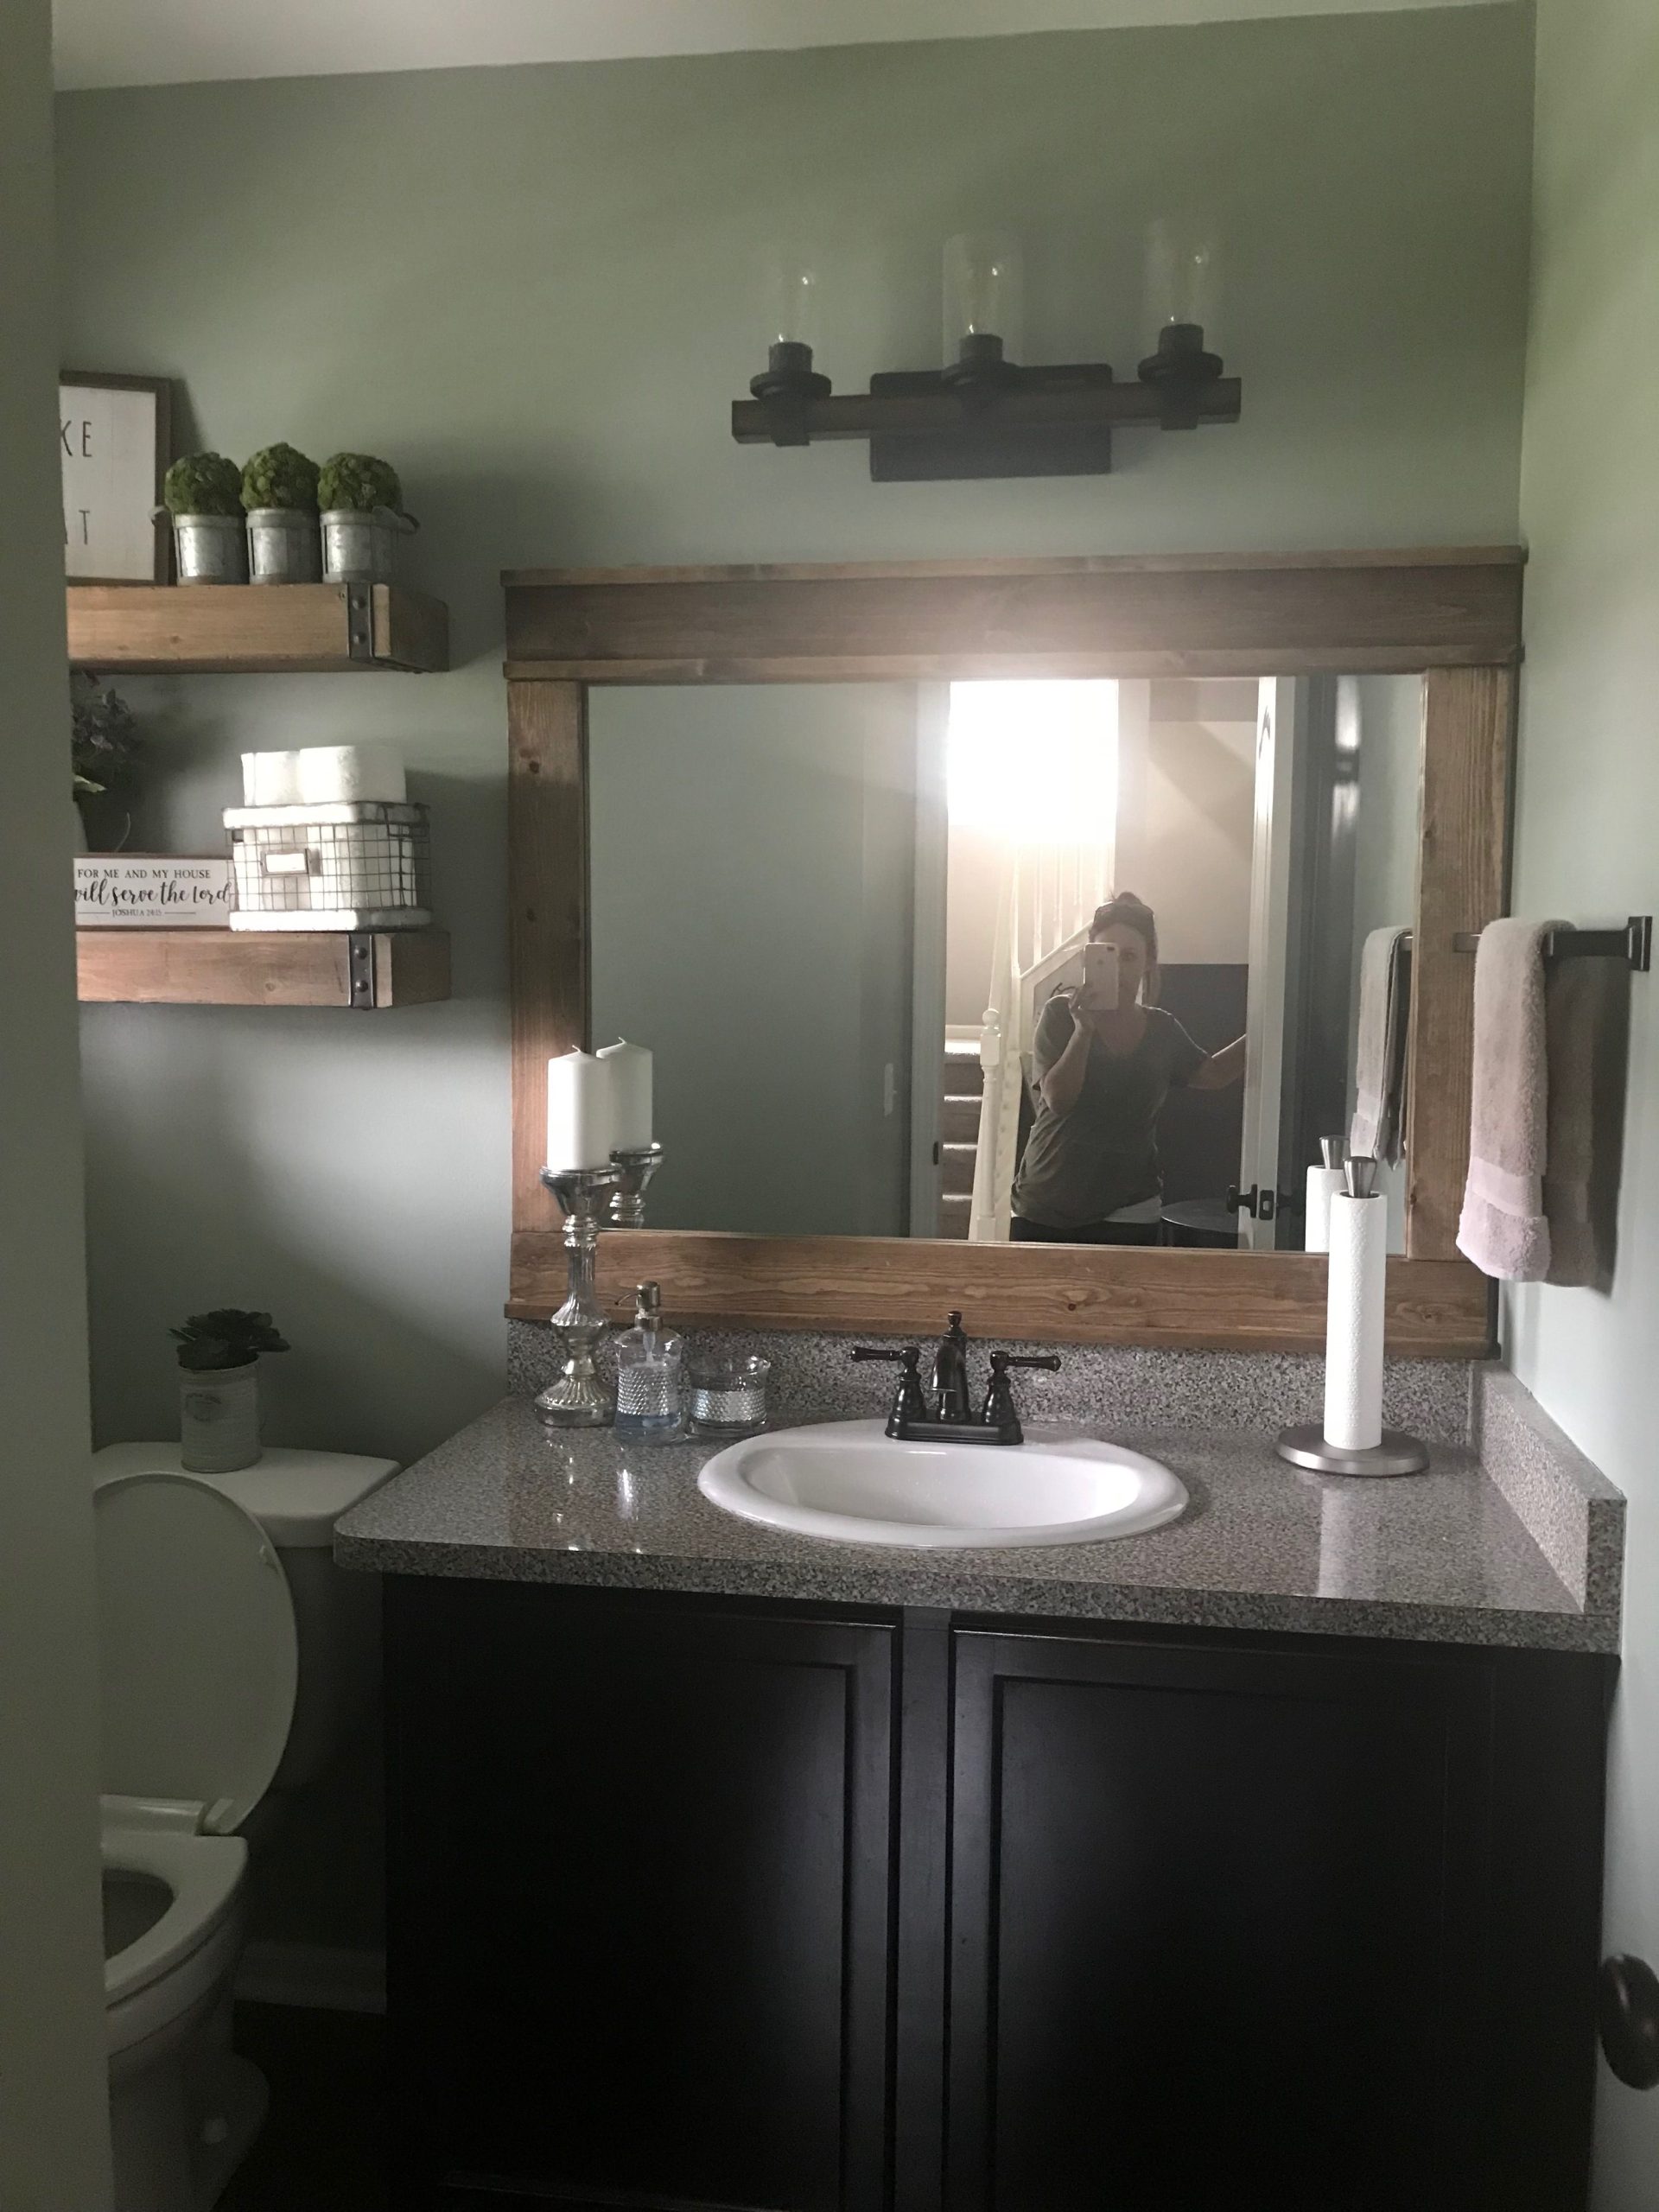 DIY Rustic Farmhouse Bathroom Mirror Scaled 